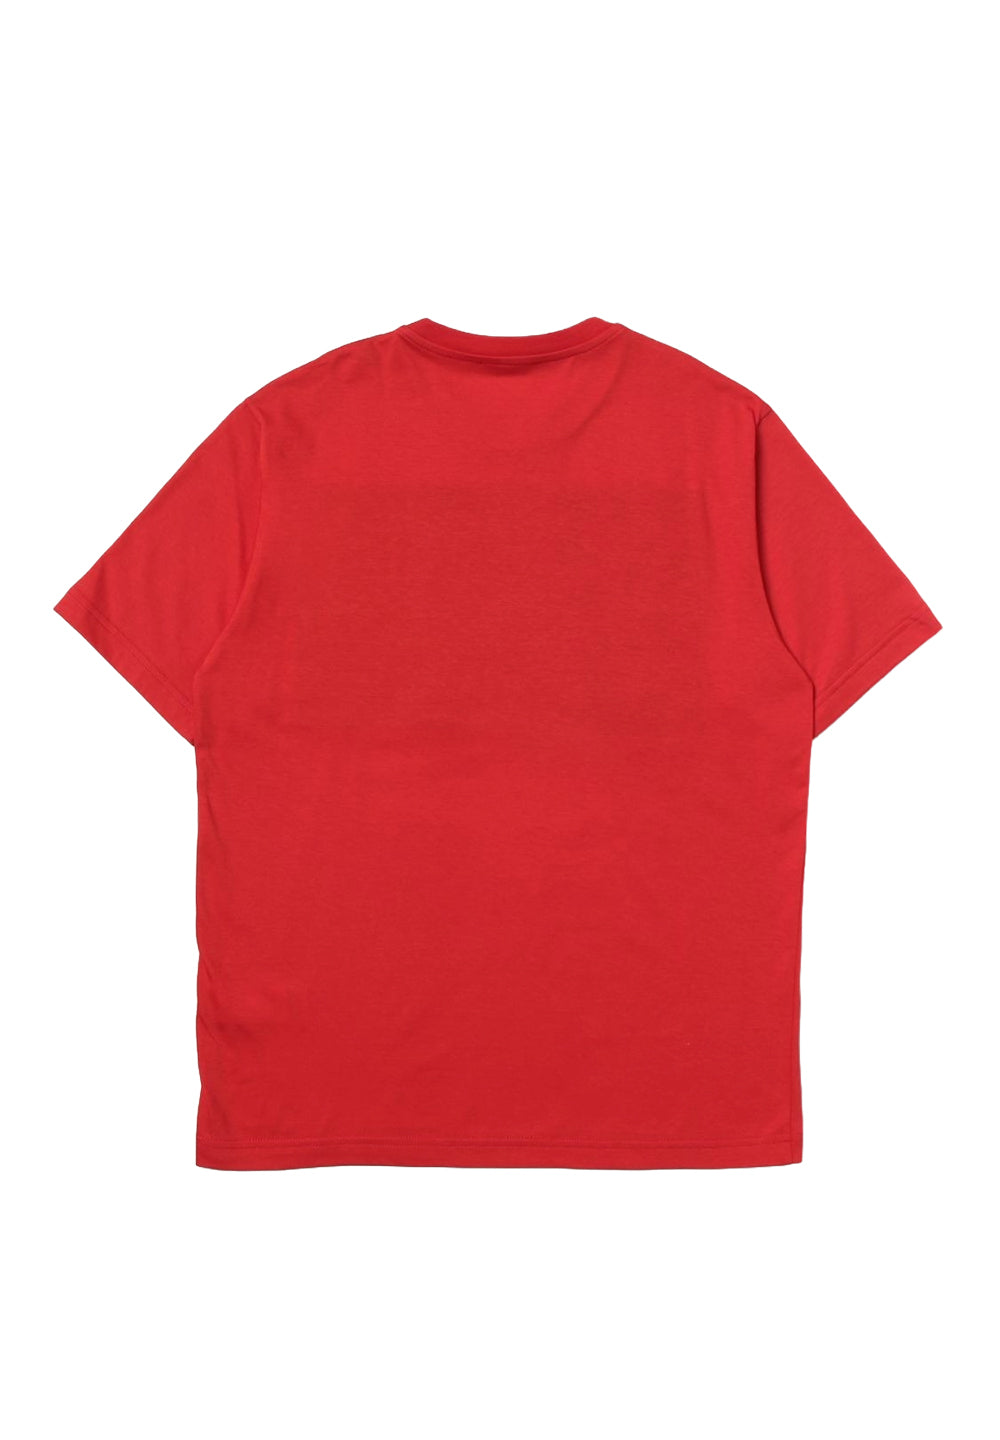 T-shirt rossa per bambino - Primamoda kids